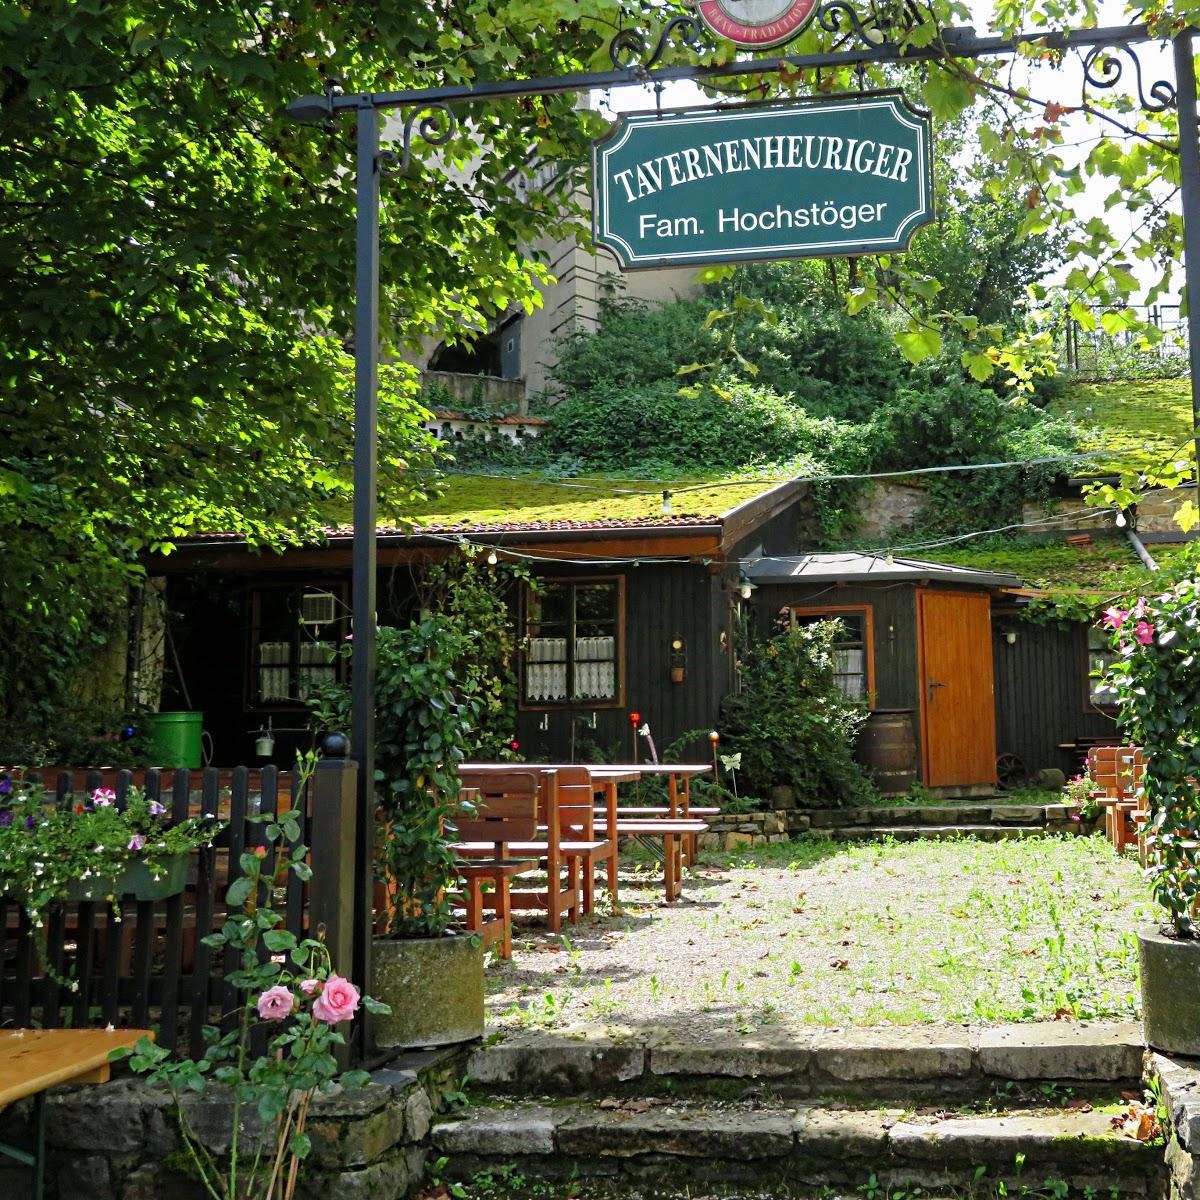 Restaurant "Tavernen Heuriger" in Leiben